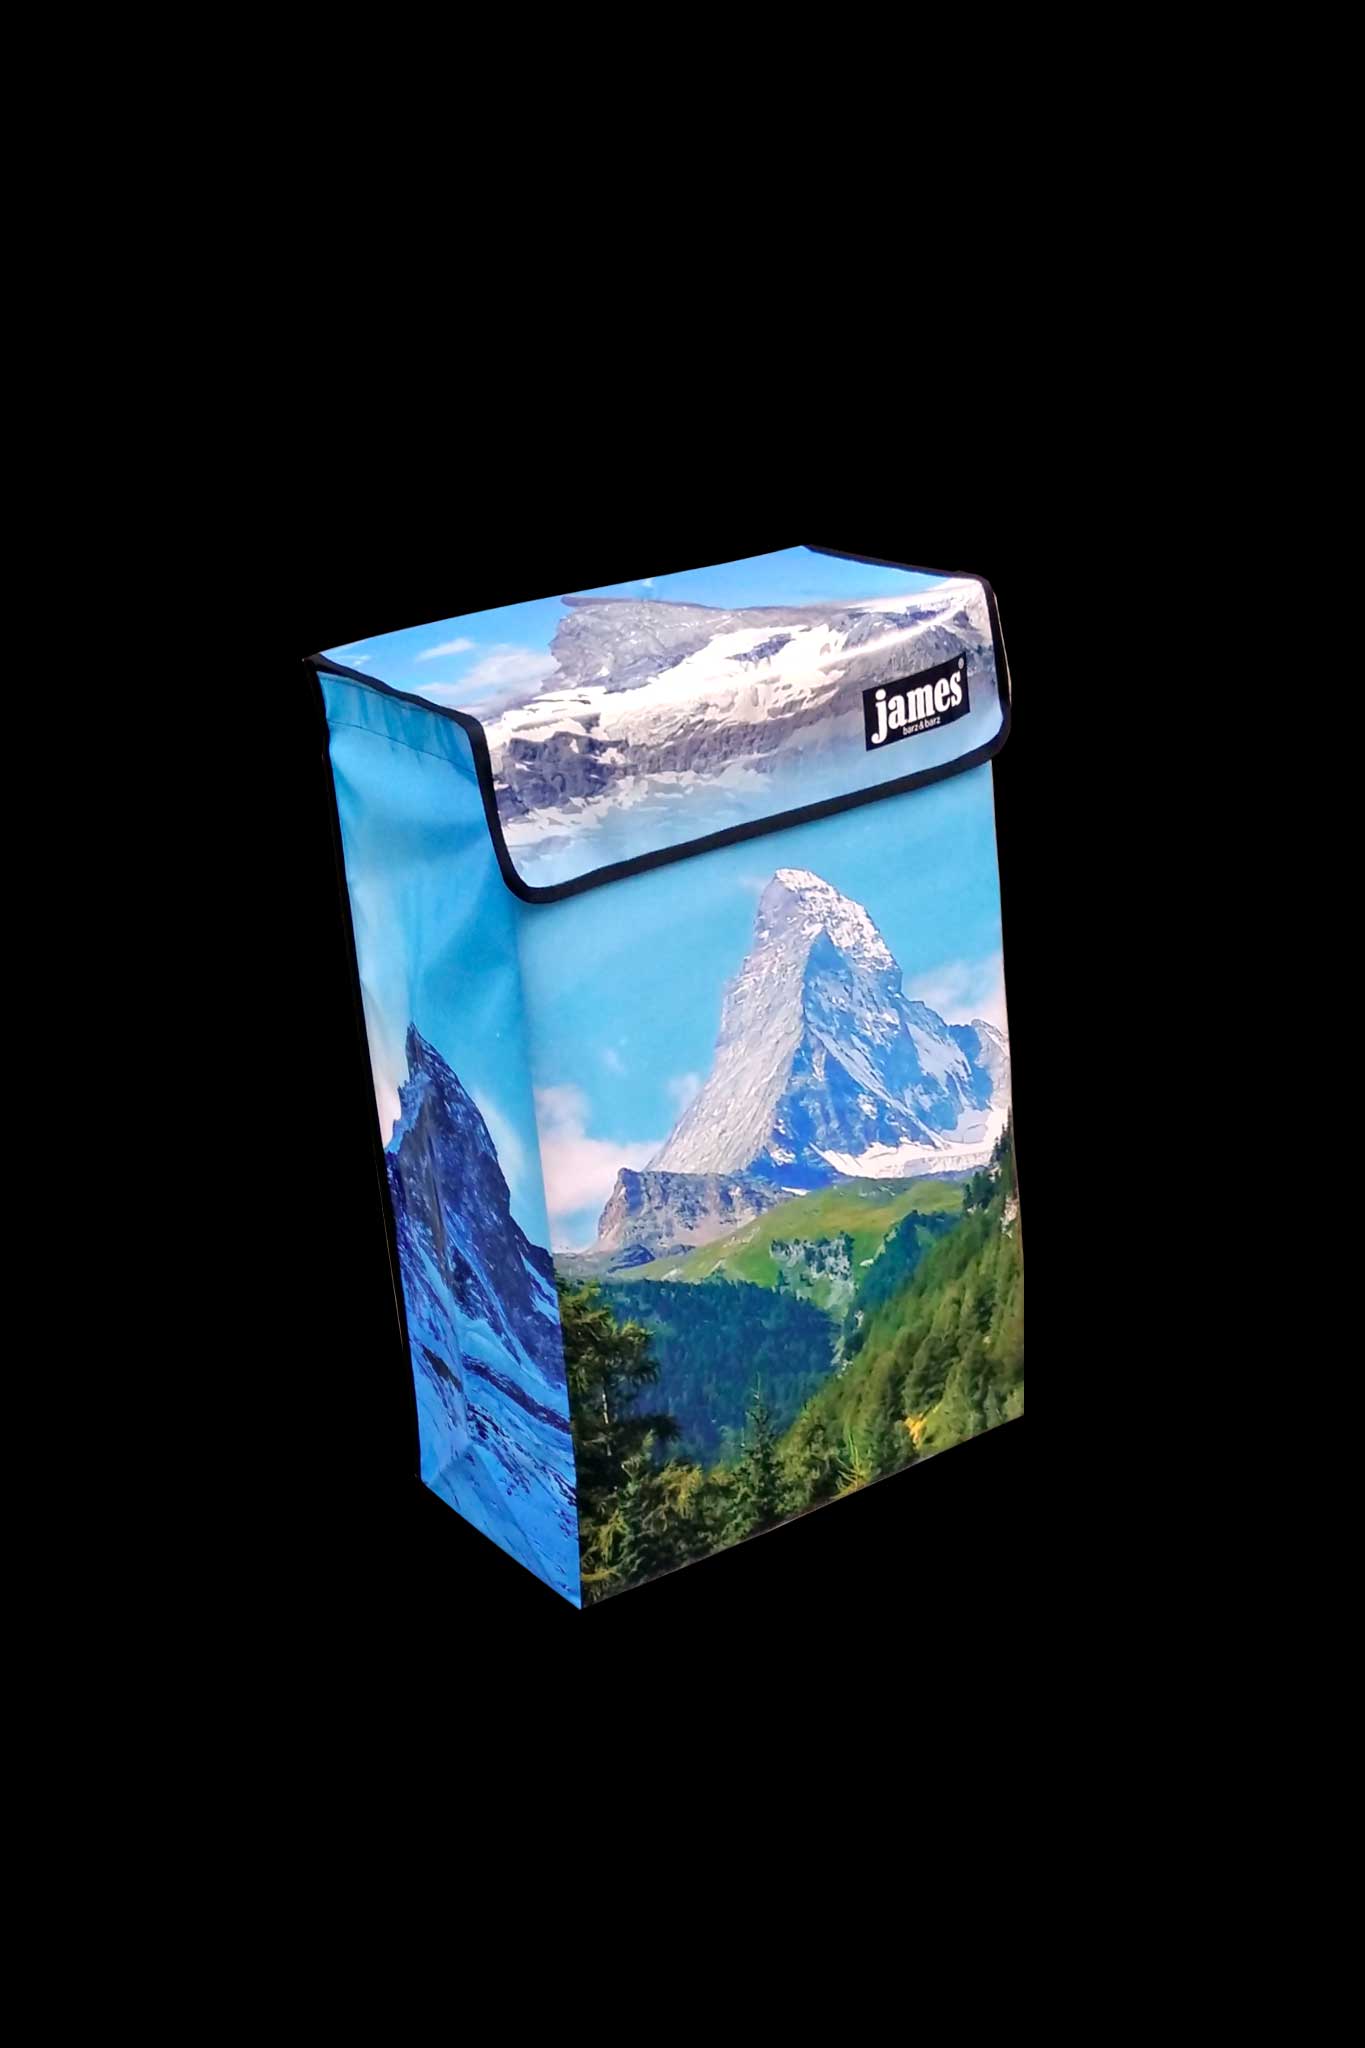 Matterhorn-James®